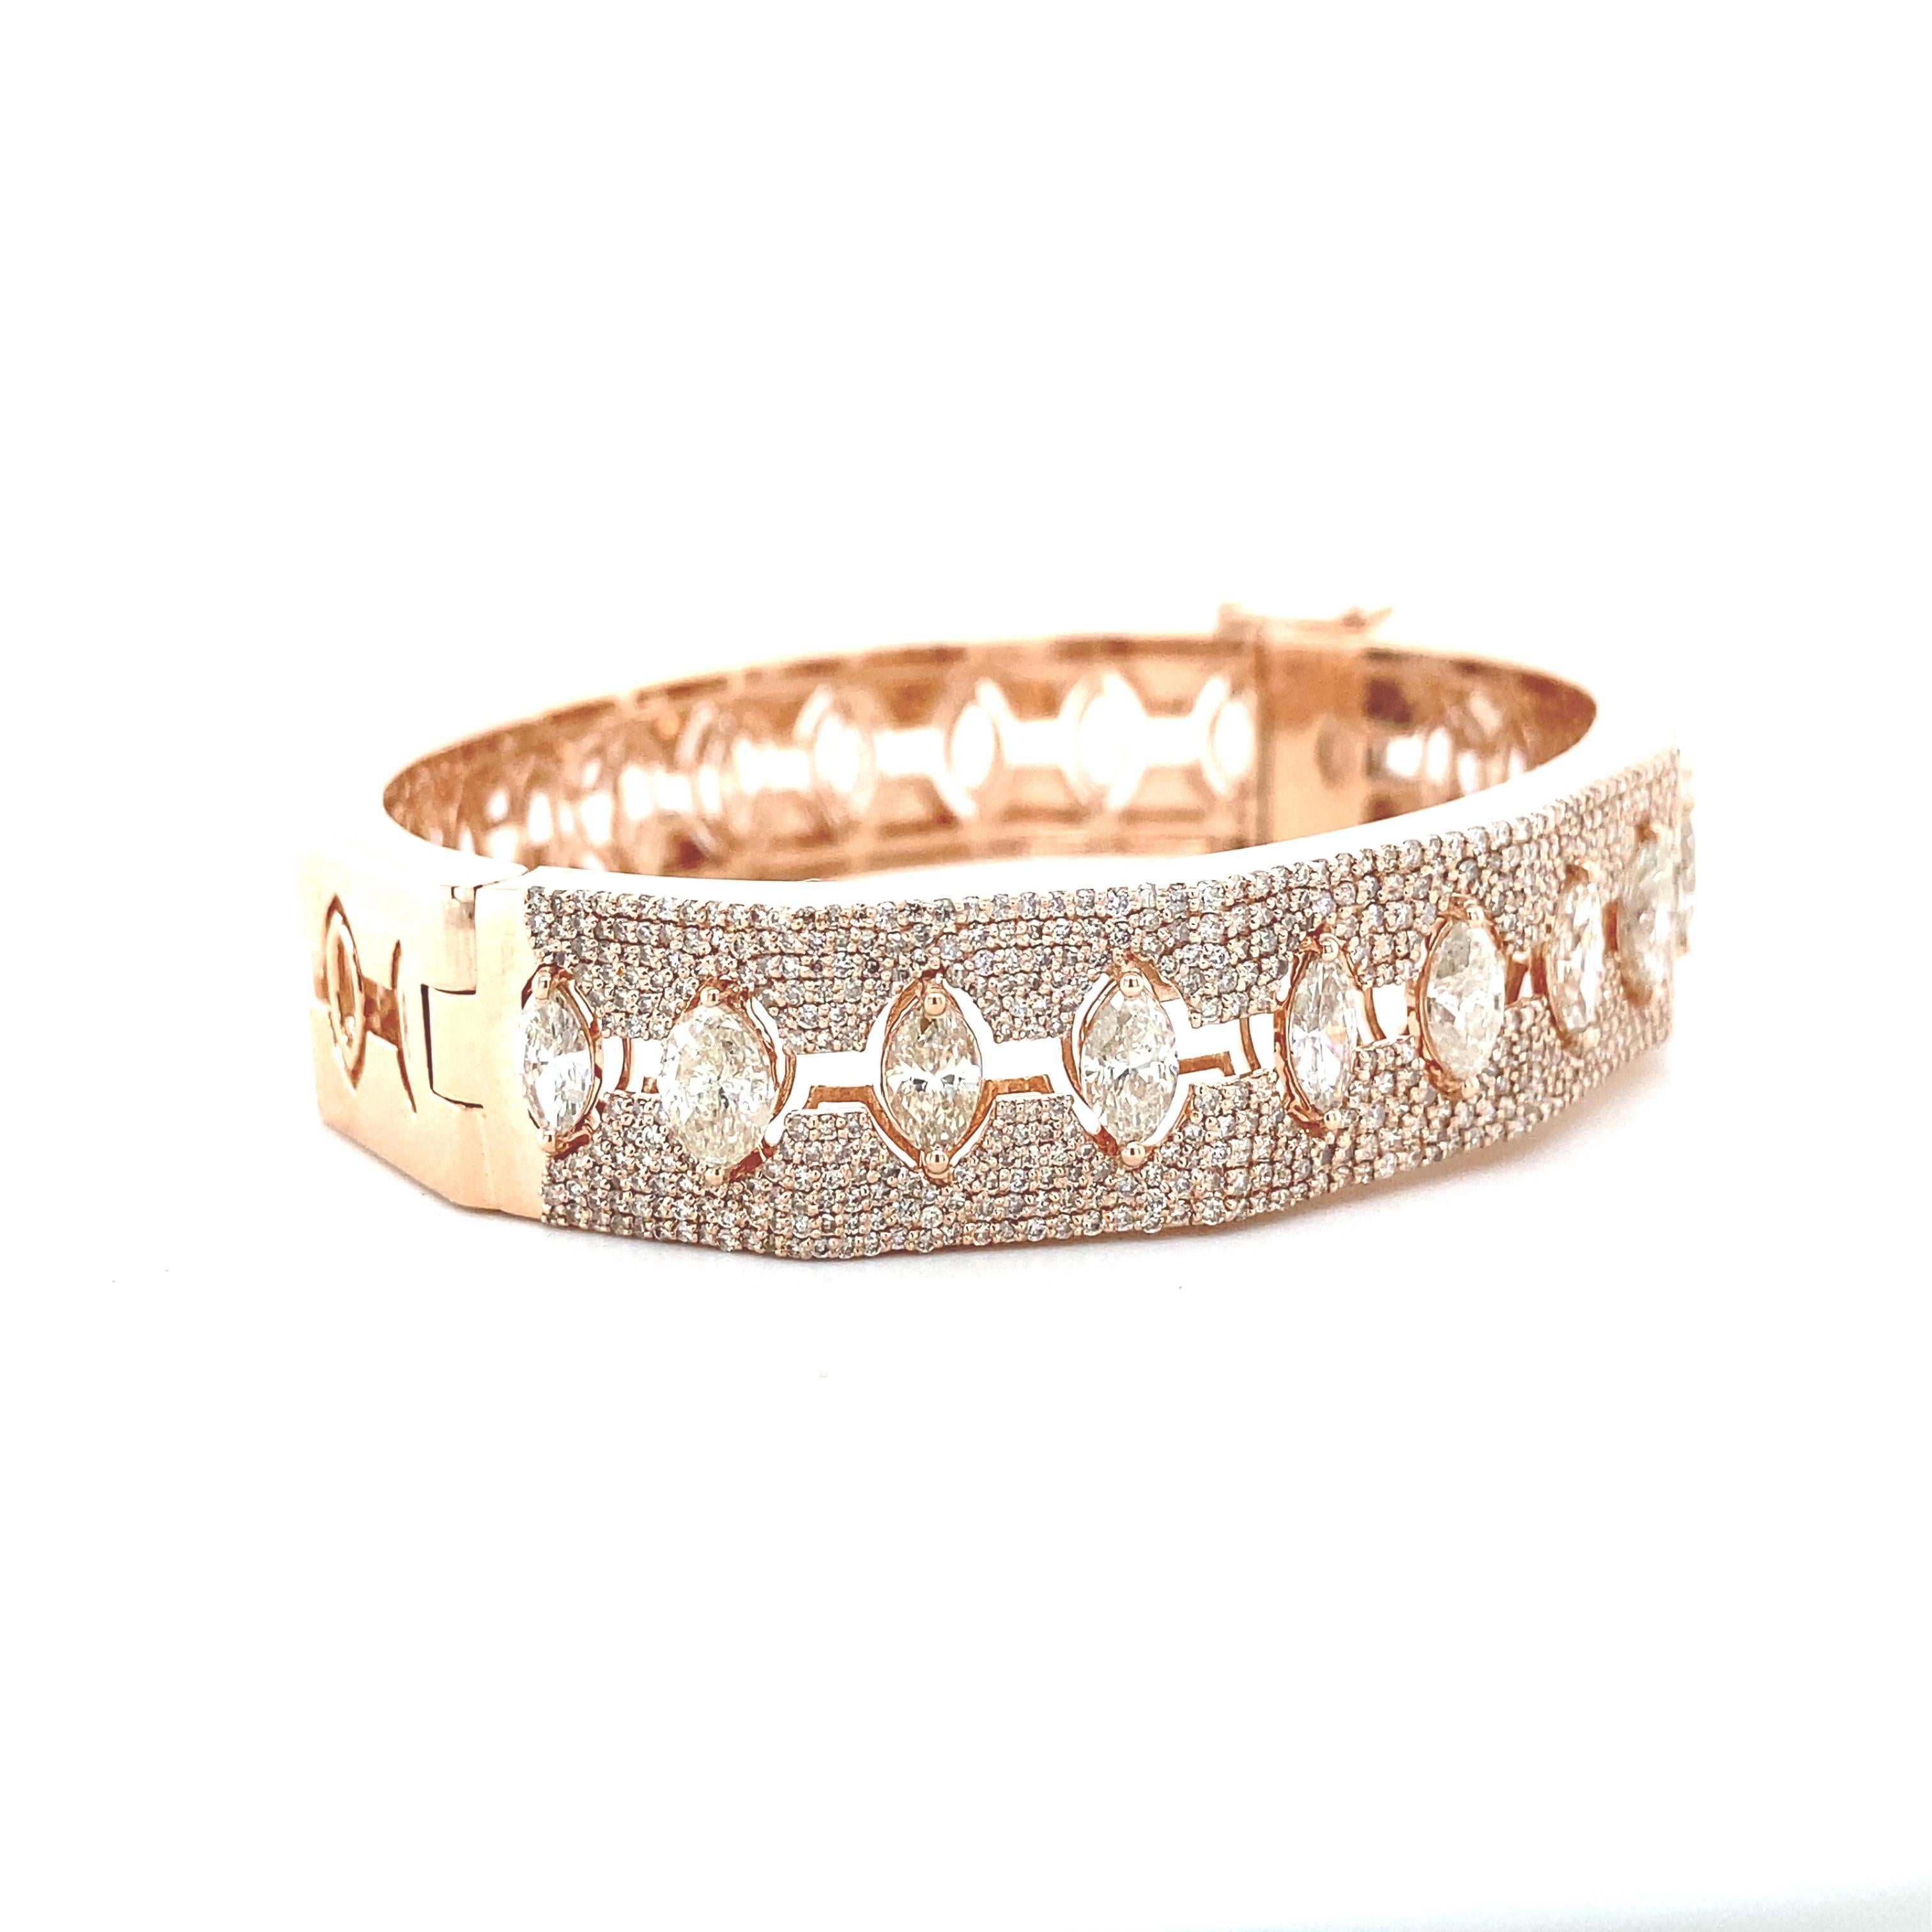 Das Armband ist ein atemberaubendes Stück Handwerkskunst, das eine brillante Reihe von marquisen und runden Diamanten in der warmen Umarmung von 18 Karat Roségold präsentiert. Die delikate Ausgewogenheit der Diamantformen schafft einen opulenten